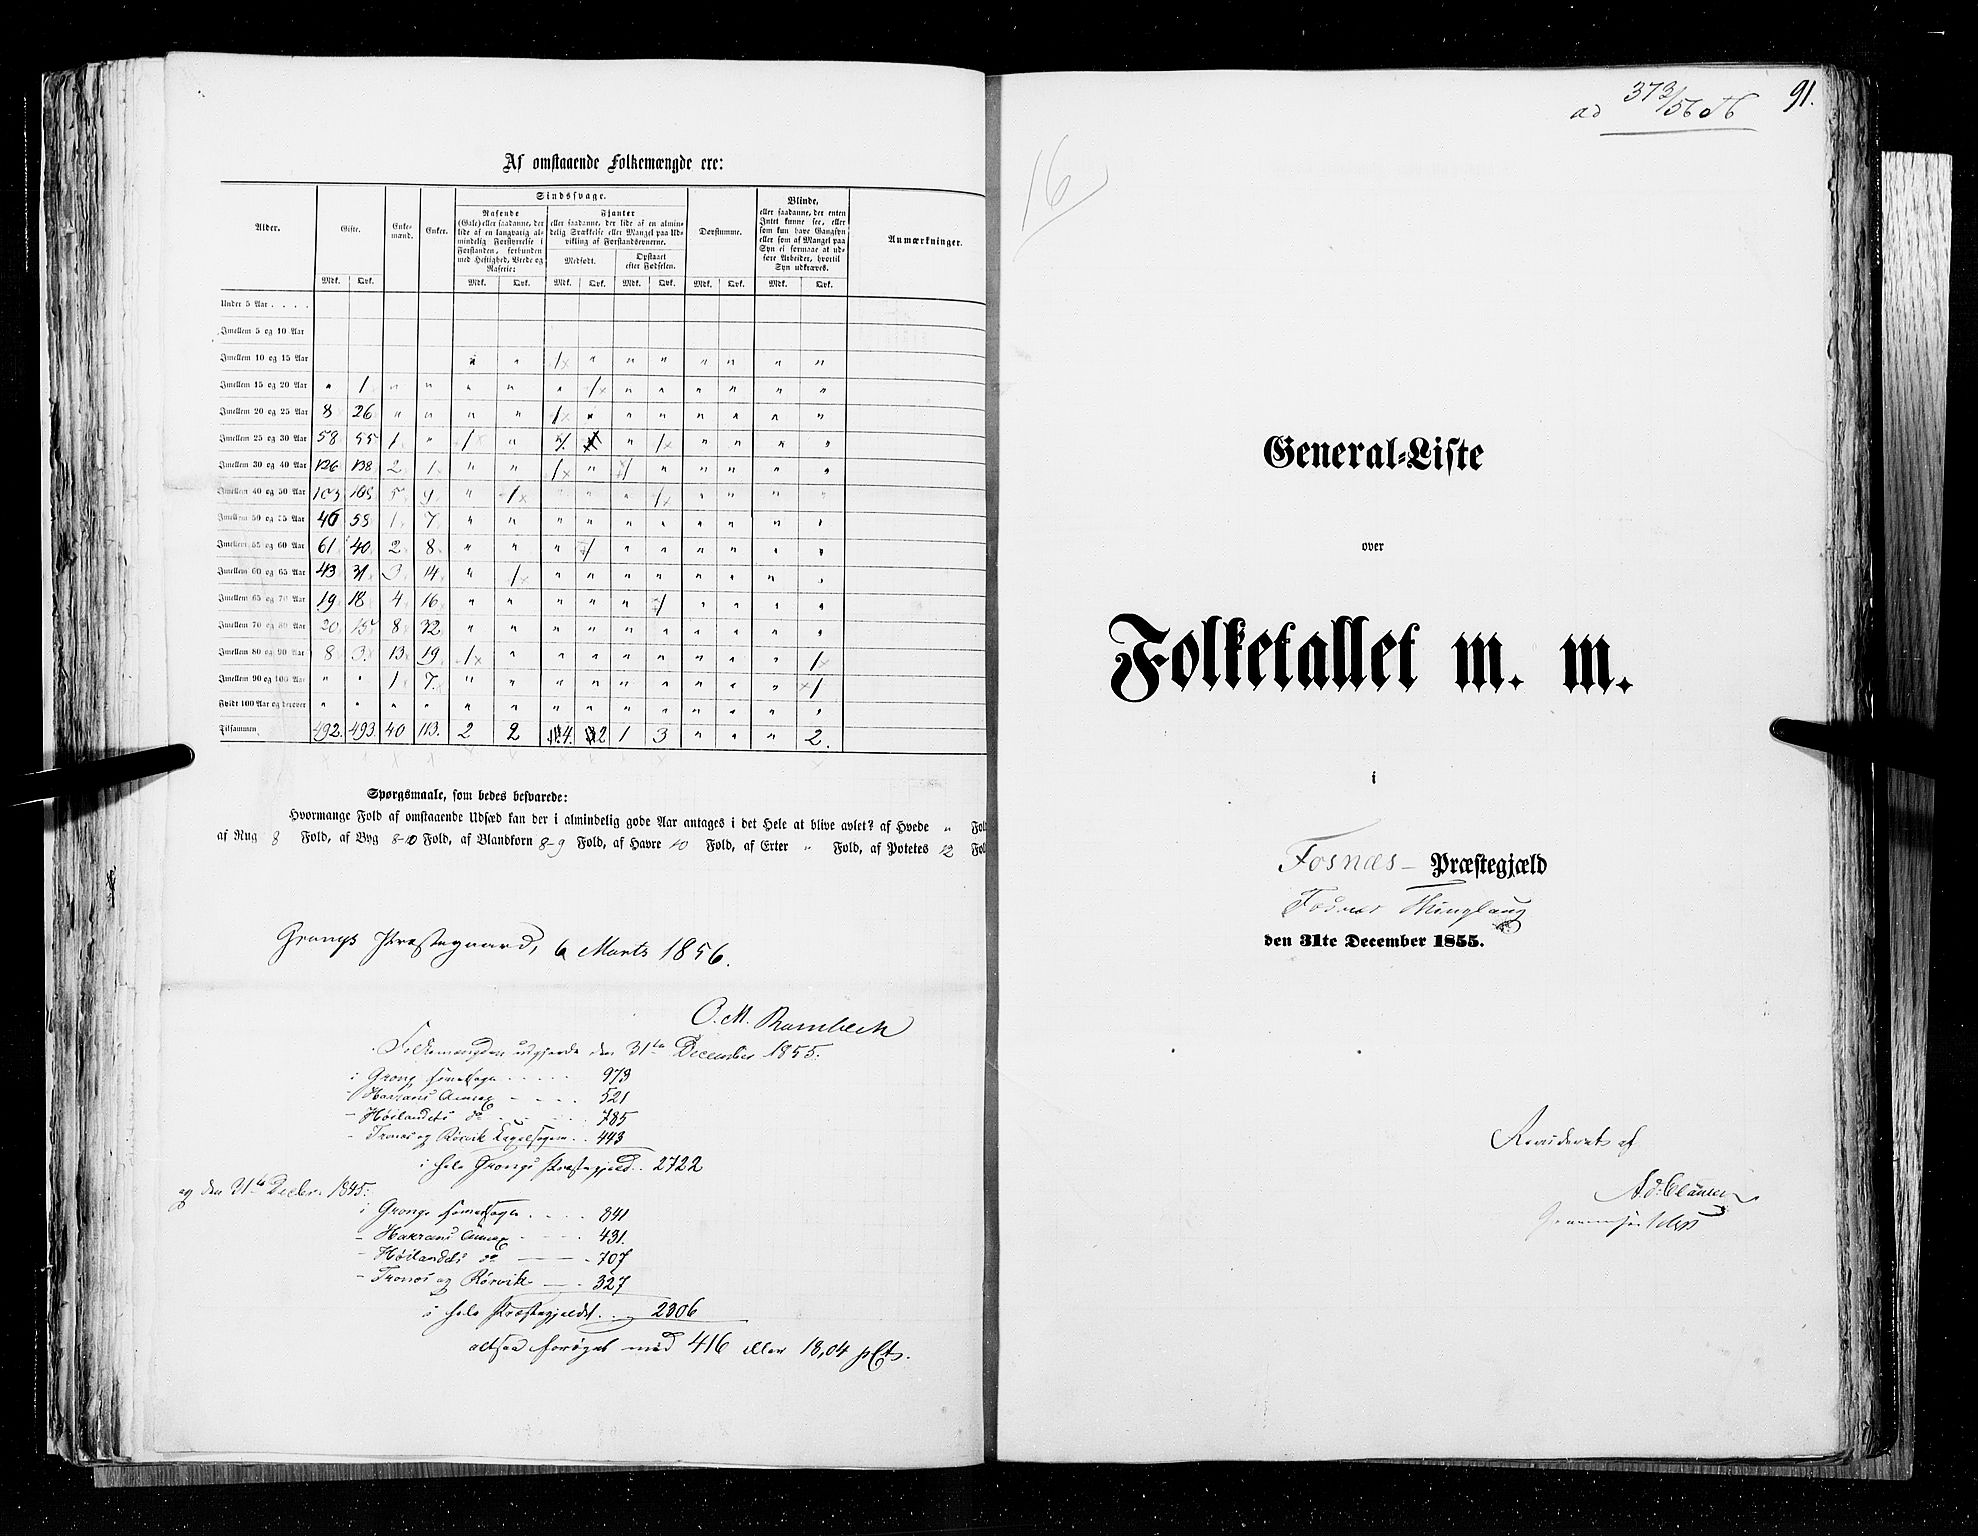 RA, Census 1855, vol. 6A: Nordre Trondhjem amt og Nordland amt, 1855, p. 91